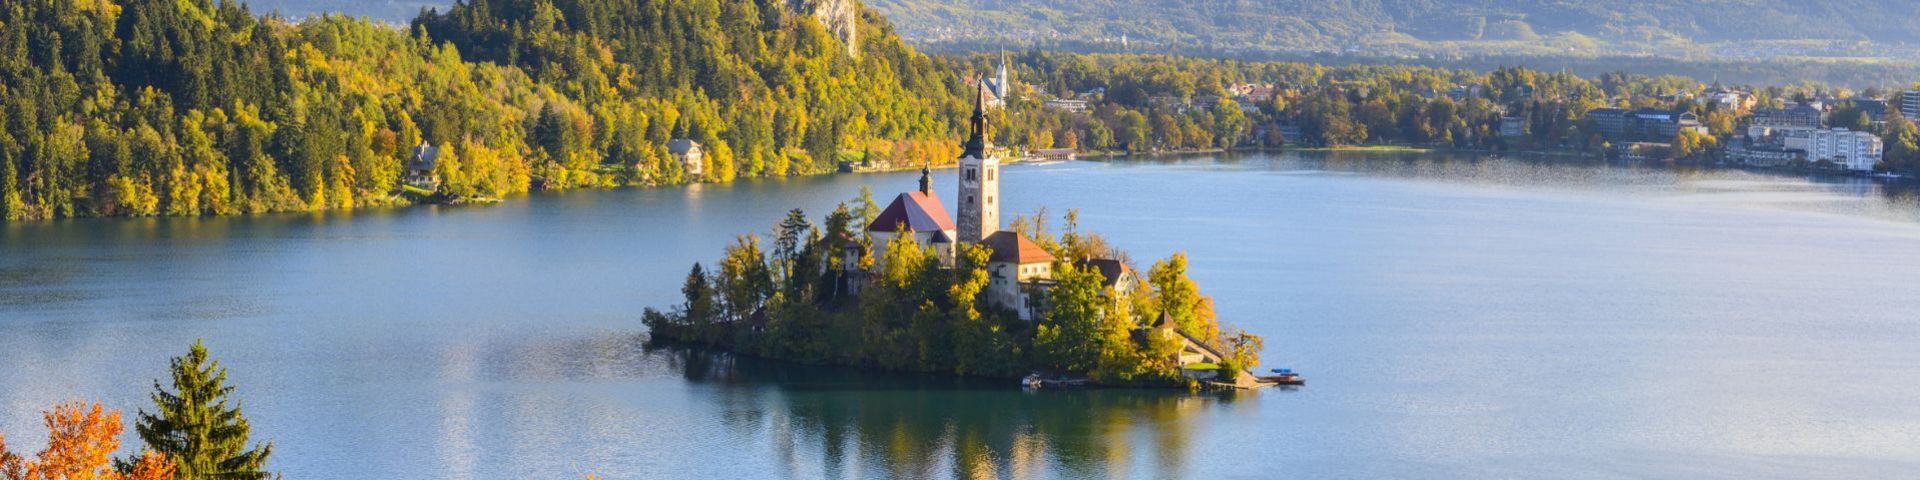 Bleder See auf einer Slowenien Reise mit sz-Reisen